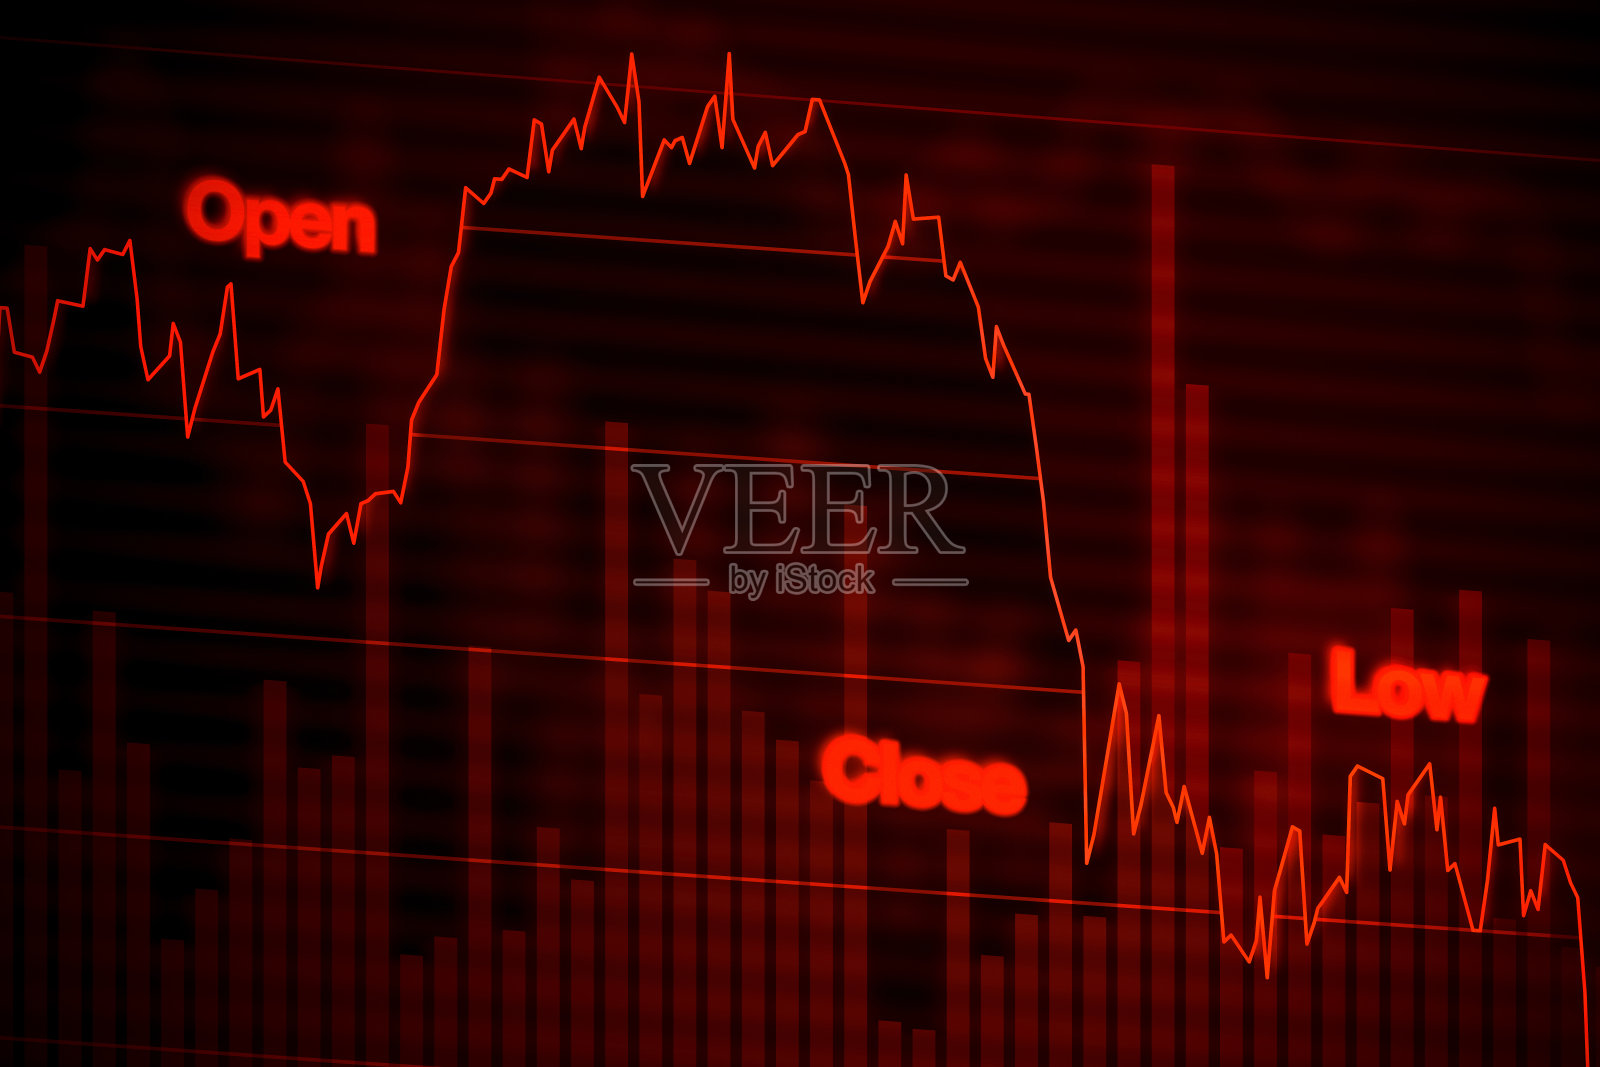 股票市场图表下跌红色照片摄影图片